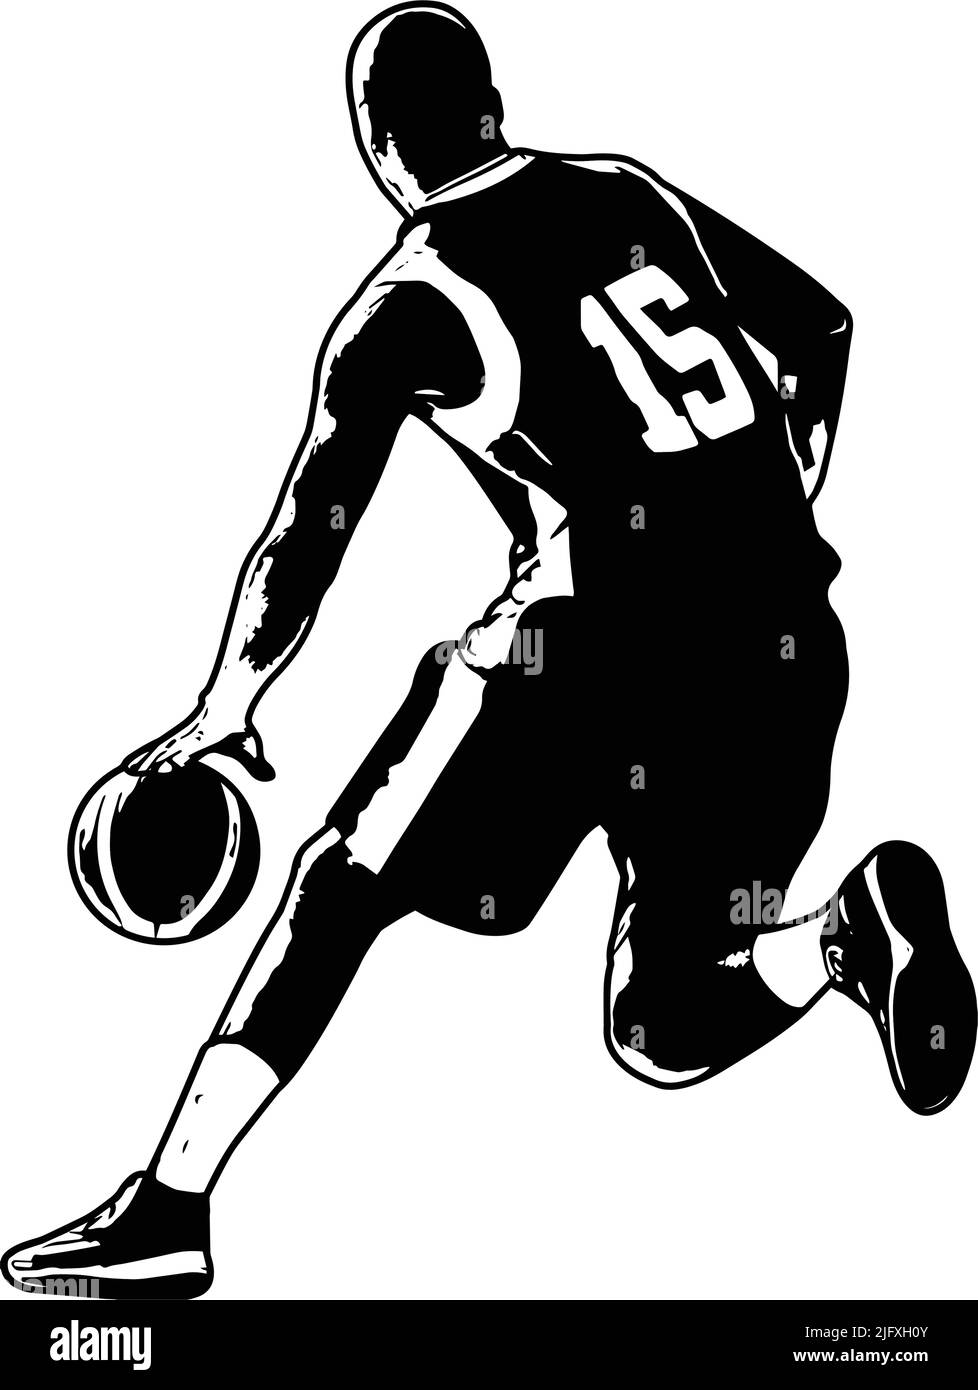 ilustración de boceto del jugador de baketball - vector Ilustración del Vector